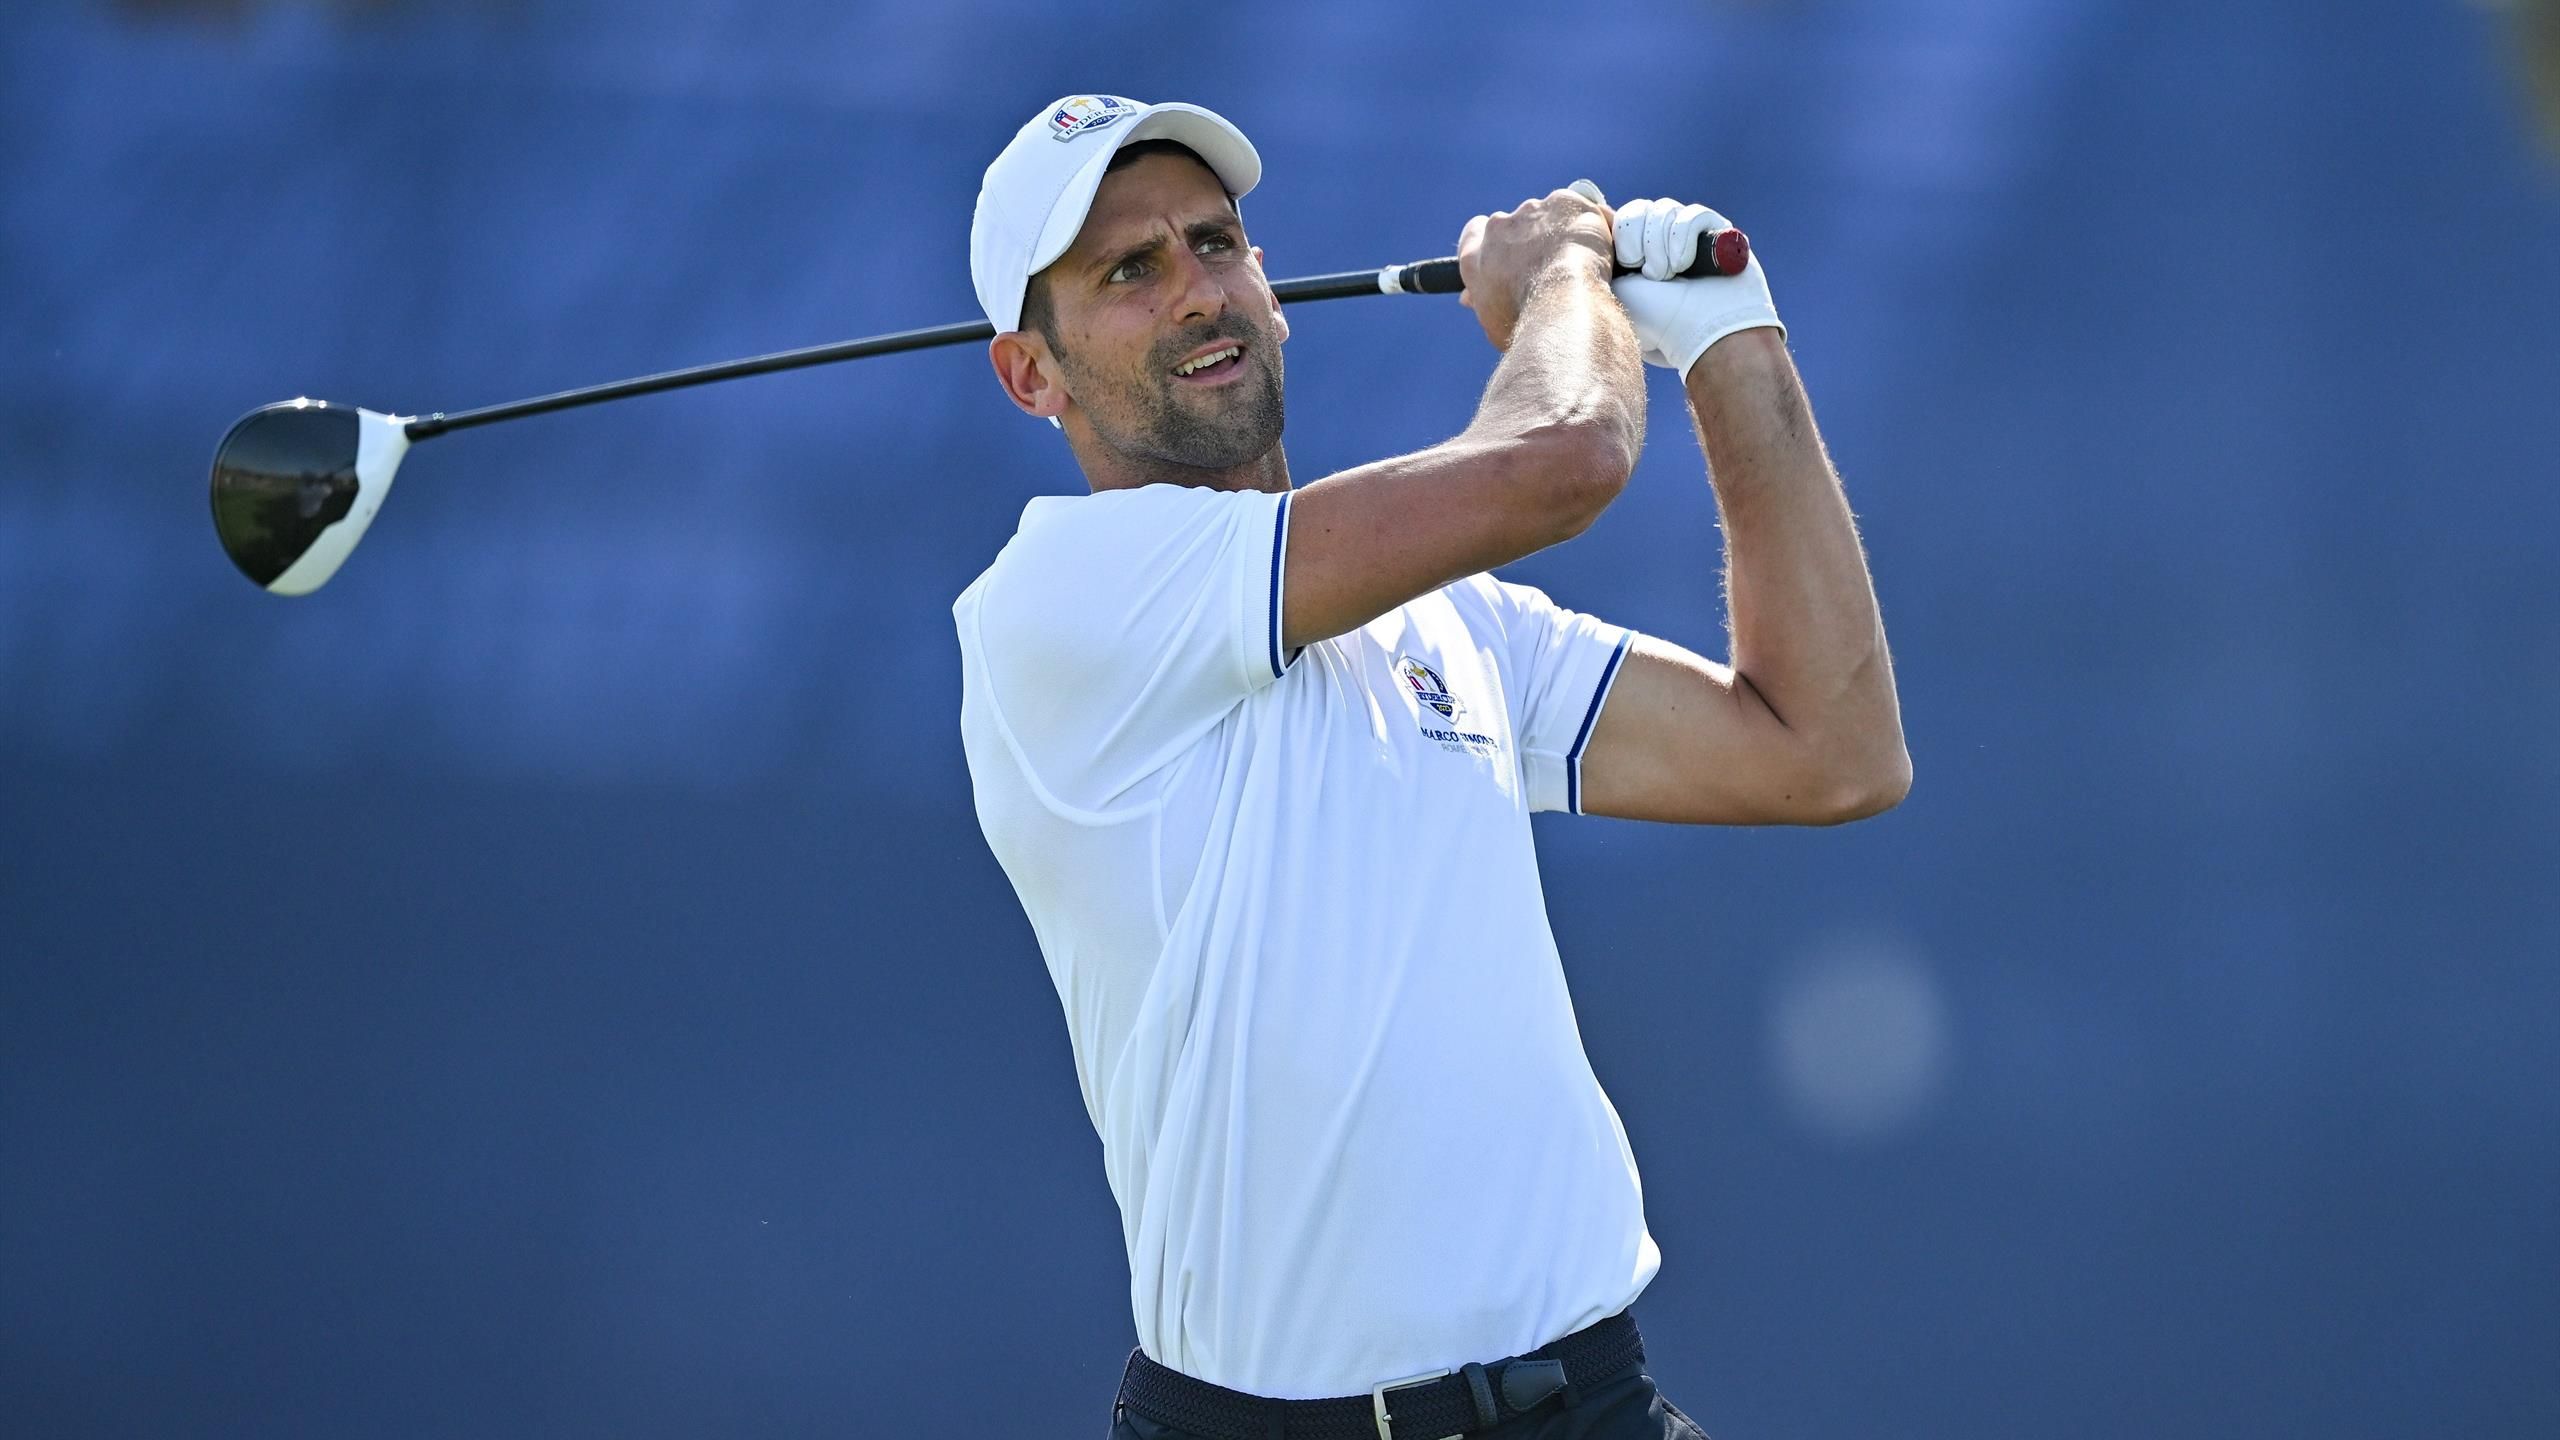 “Questa è grandezza sportiva” – Novak Djokovic guida Monty al successo All-Star della Ryder Cup